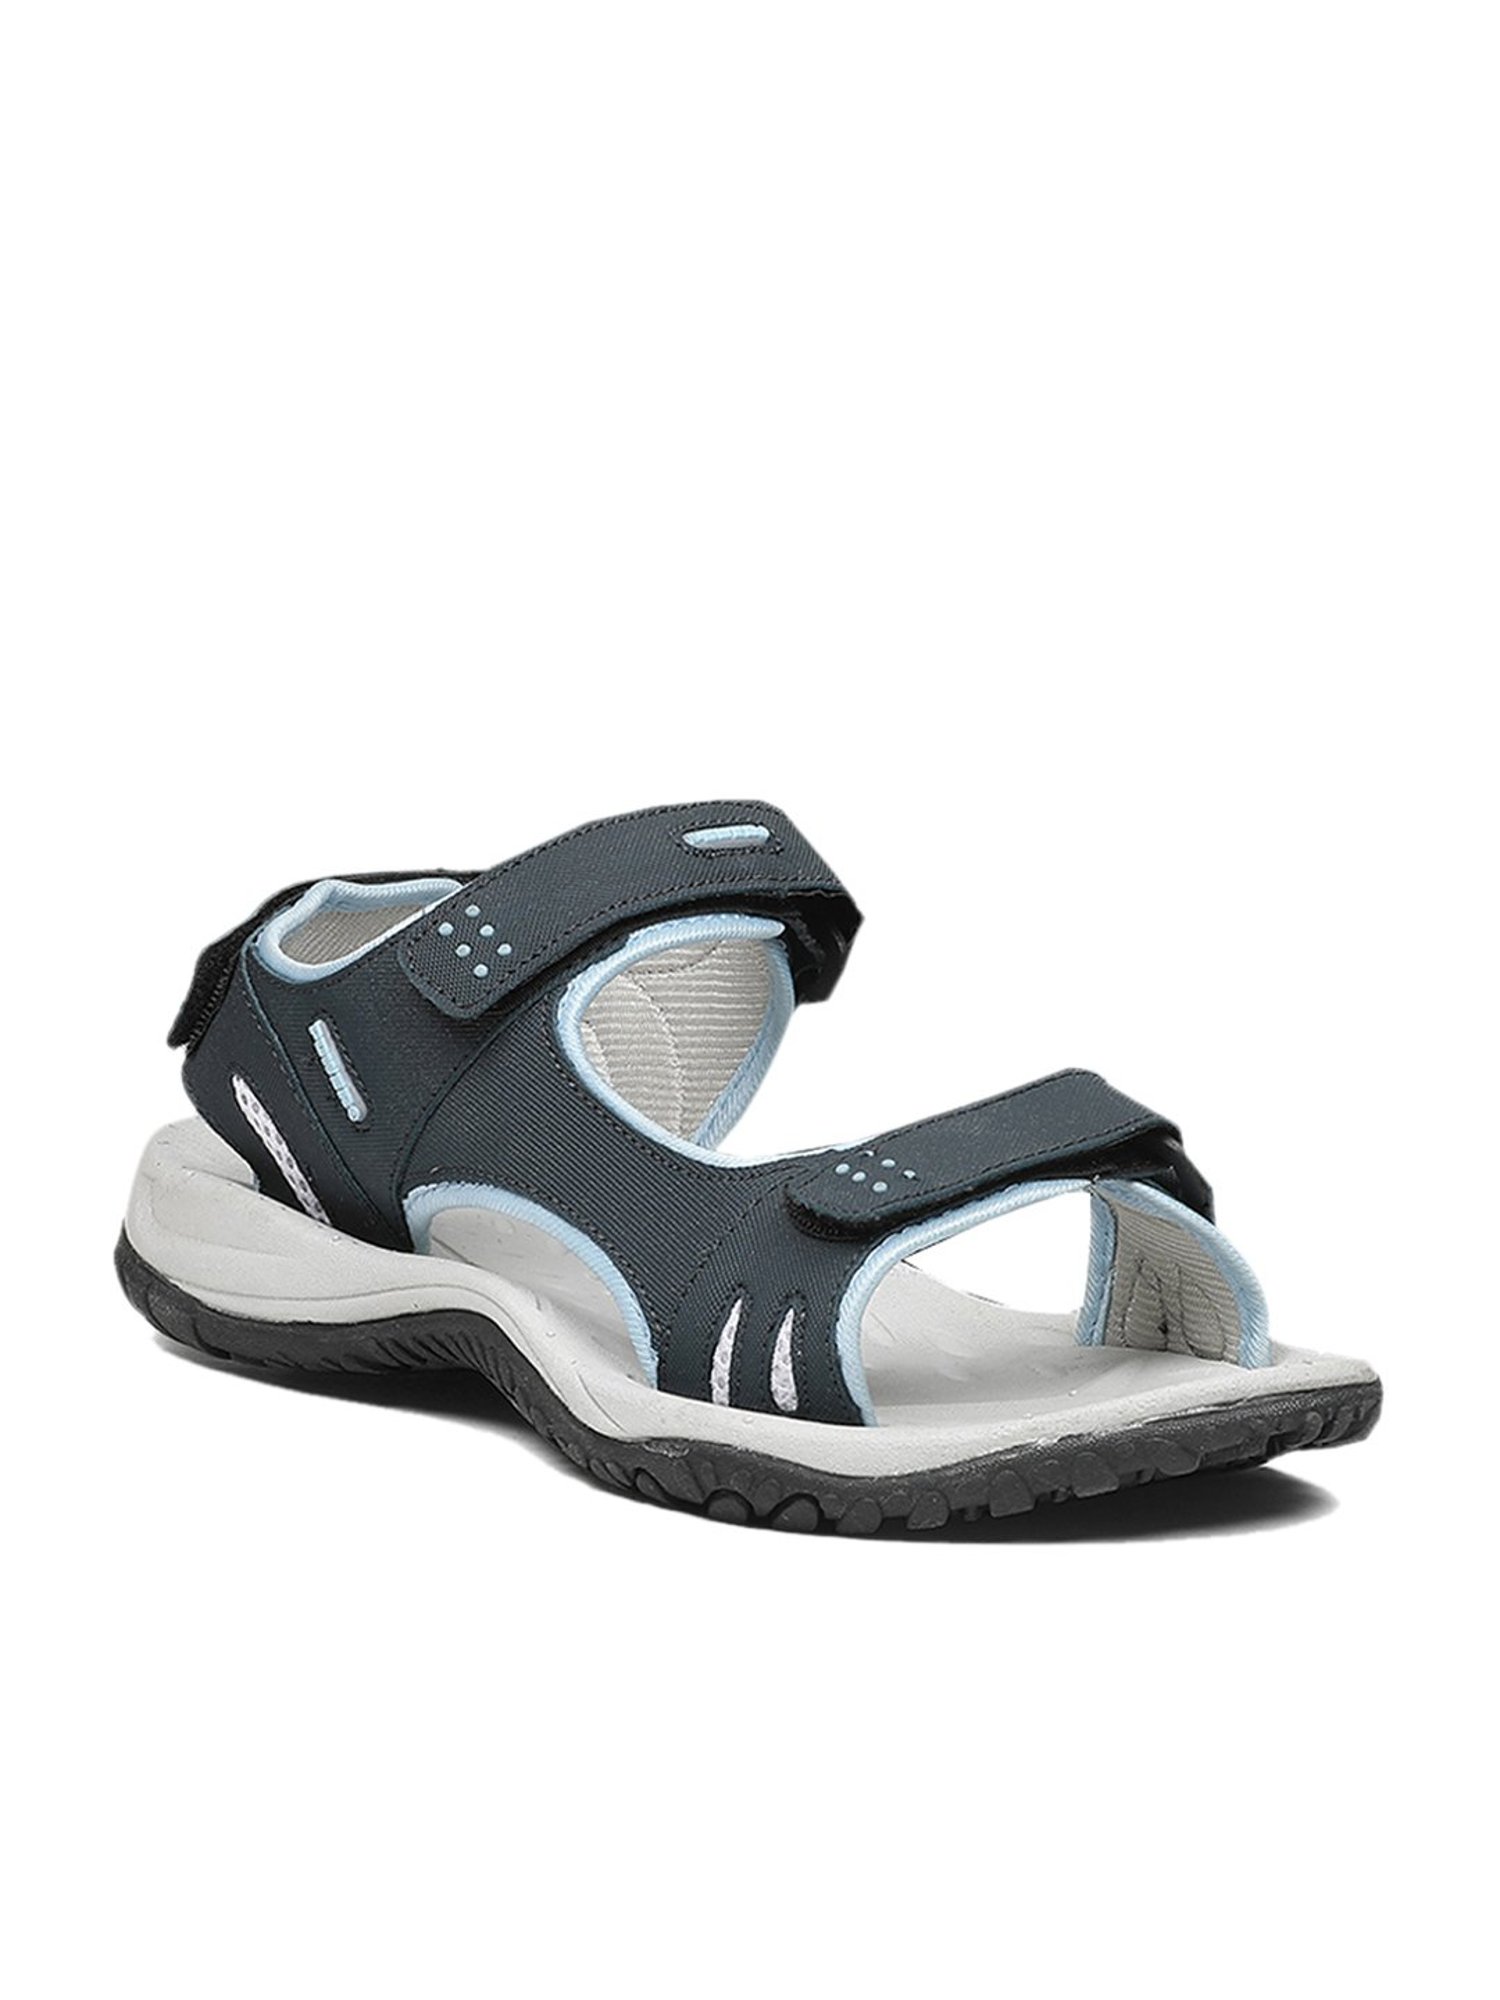 Bata Dark Grey Floater Sandals 